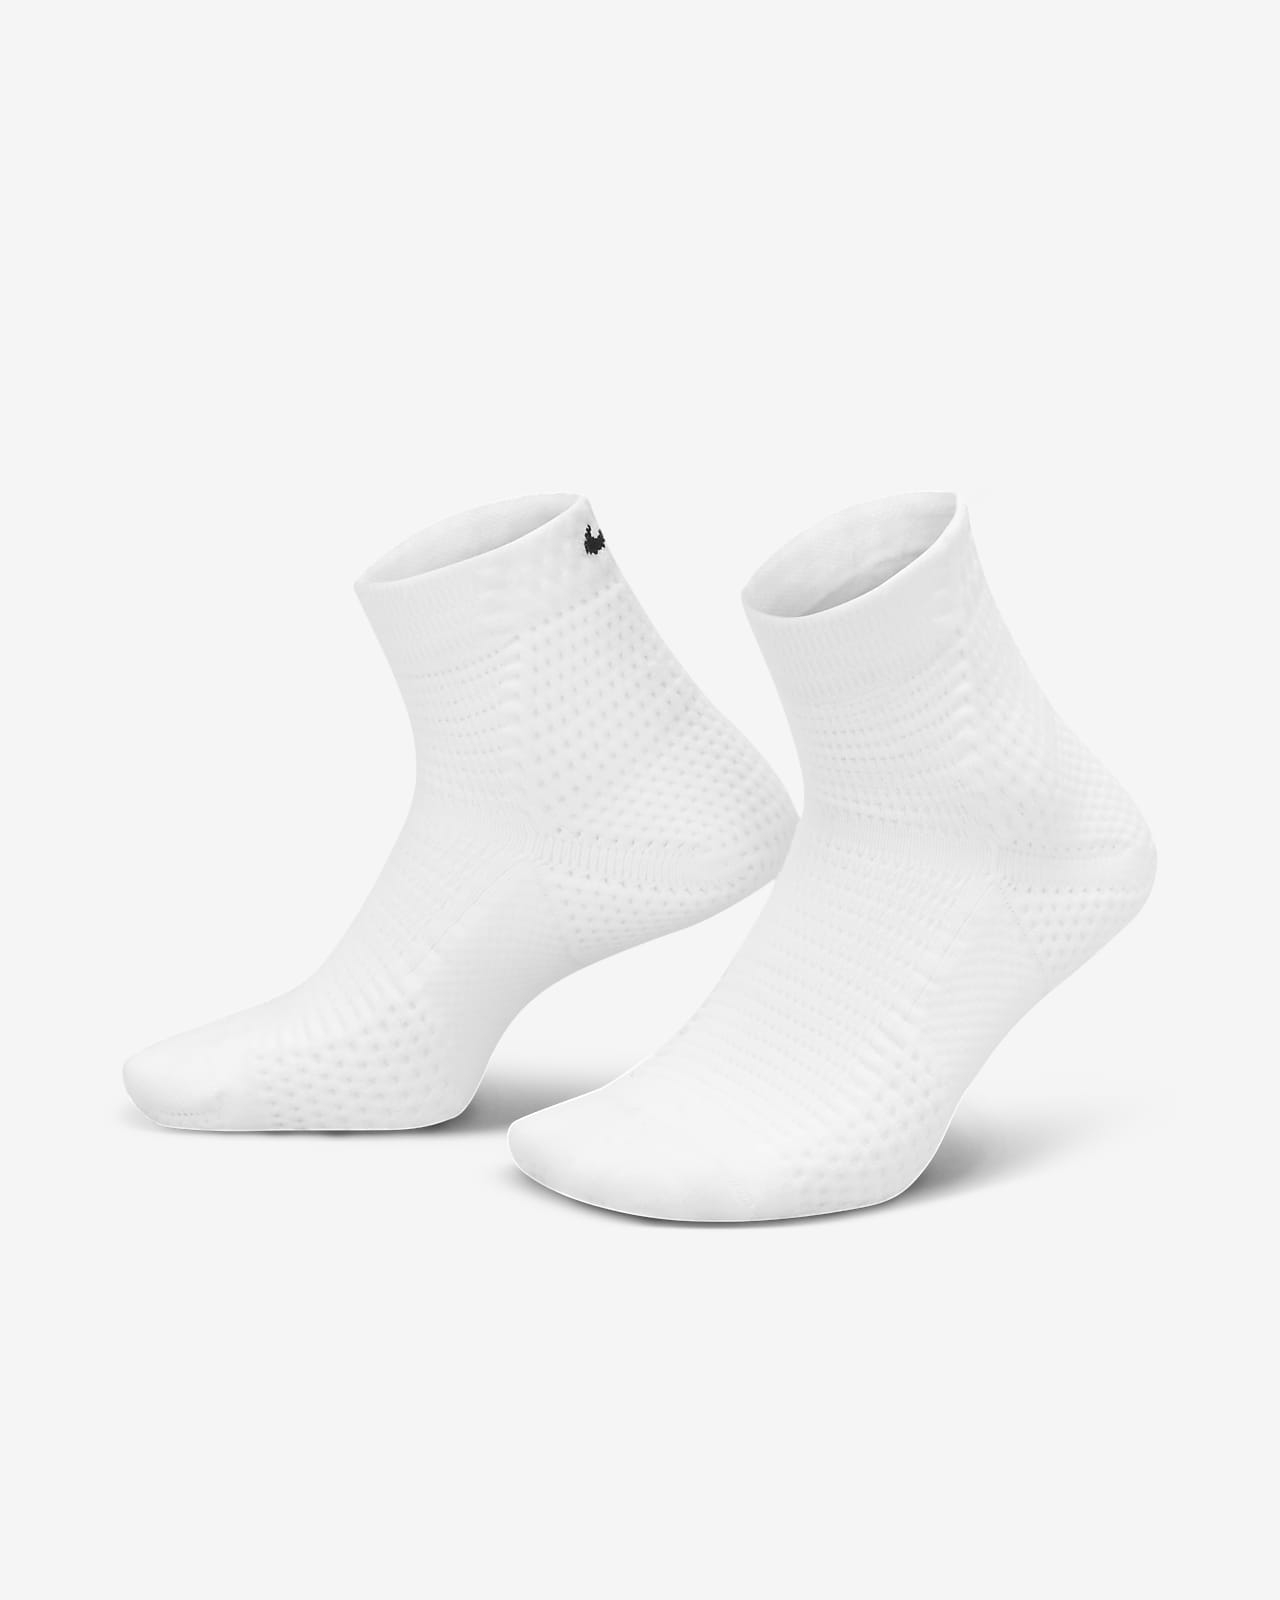 Calze ammortizzate alla caviglia Dri-FIT ADV Nike Unicorn (1 paio)